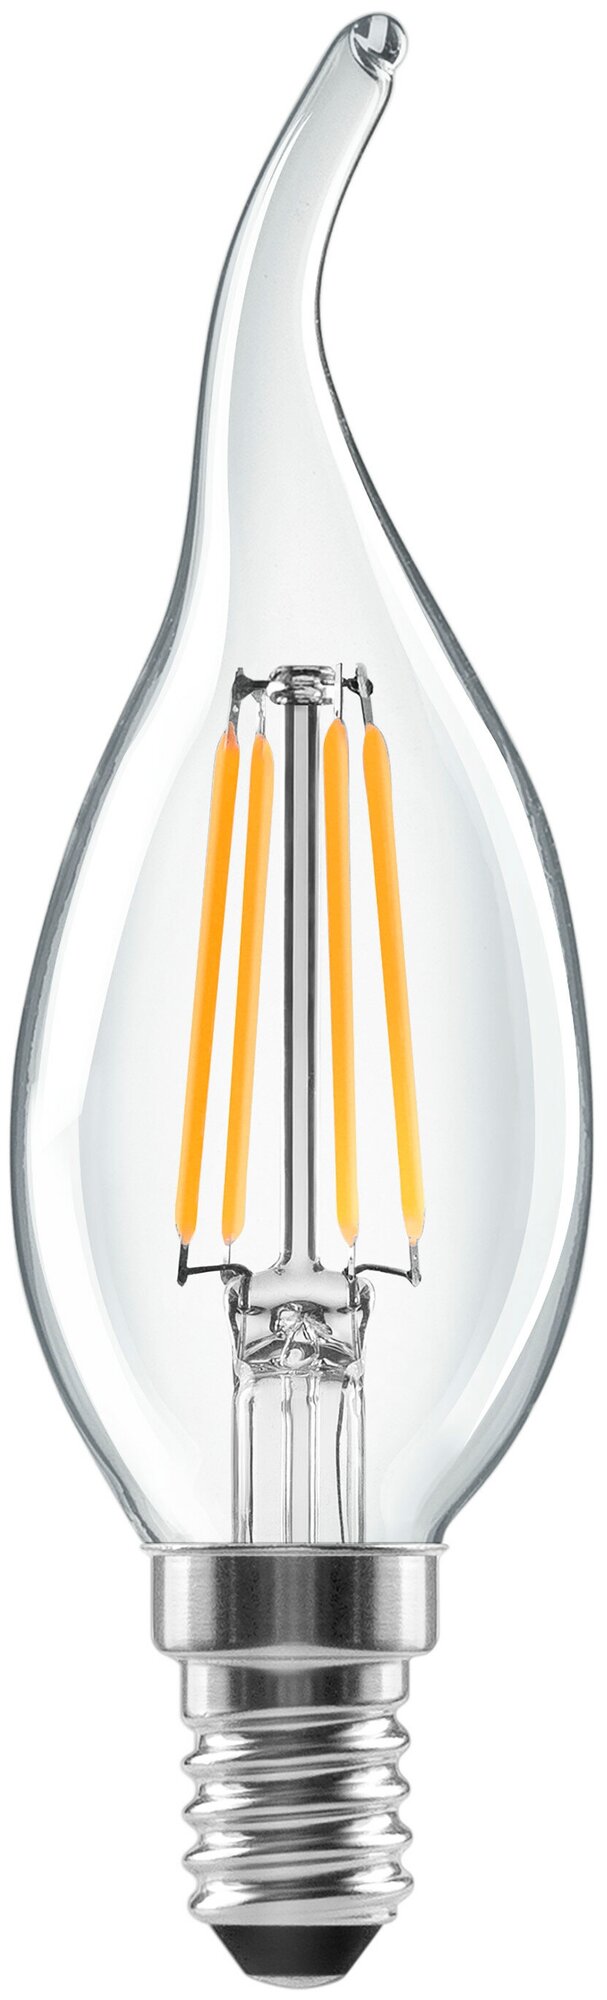 Лампа светодиодная Lexman E14 220-240 В 5 Вт свеча на ветру прозрачная 600 лм нейтральный белый свет